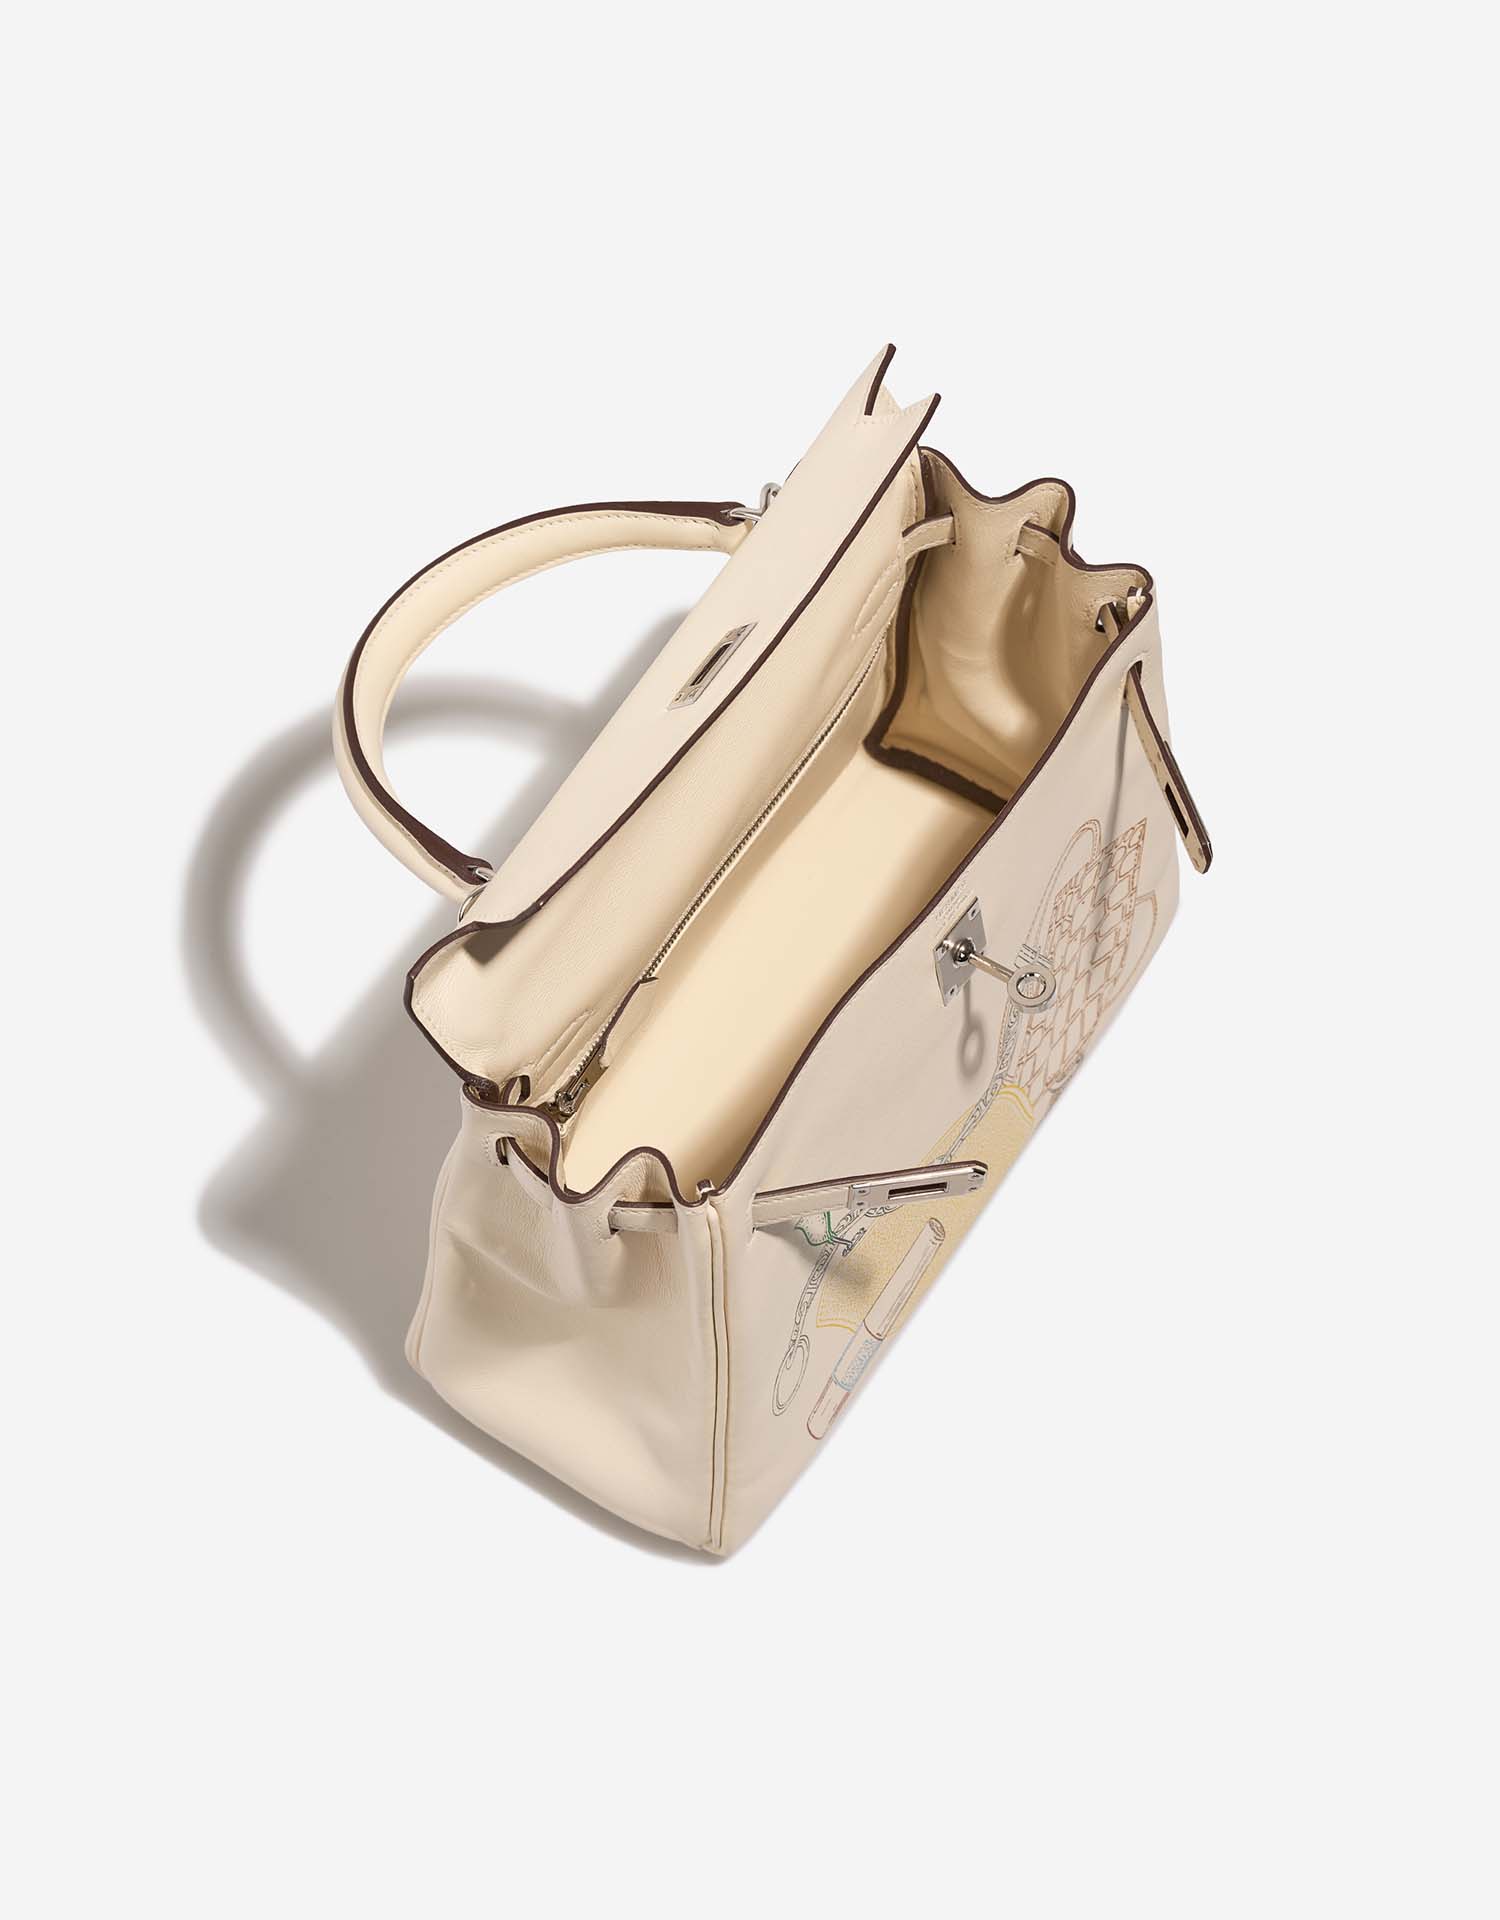 Hermès Kelly 25 Nata Inside | Verkaufen Sie Ihre Designertasche auf Saclab.com